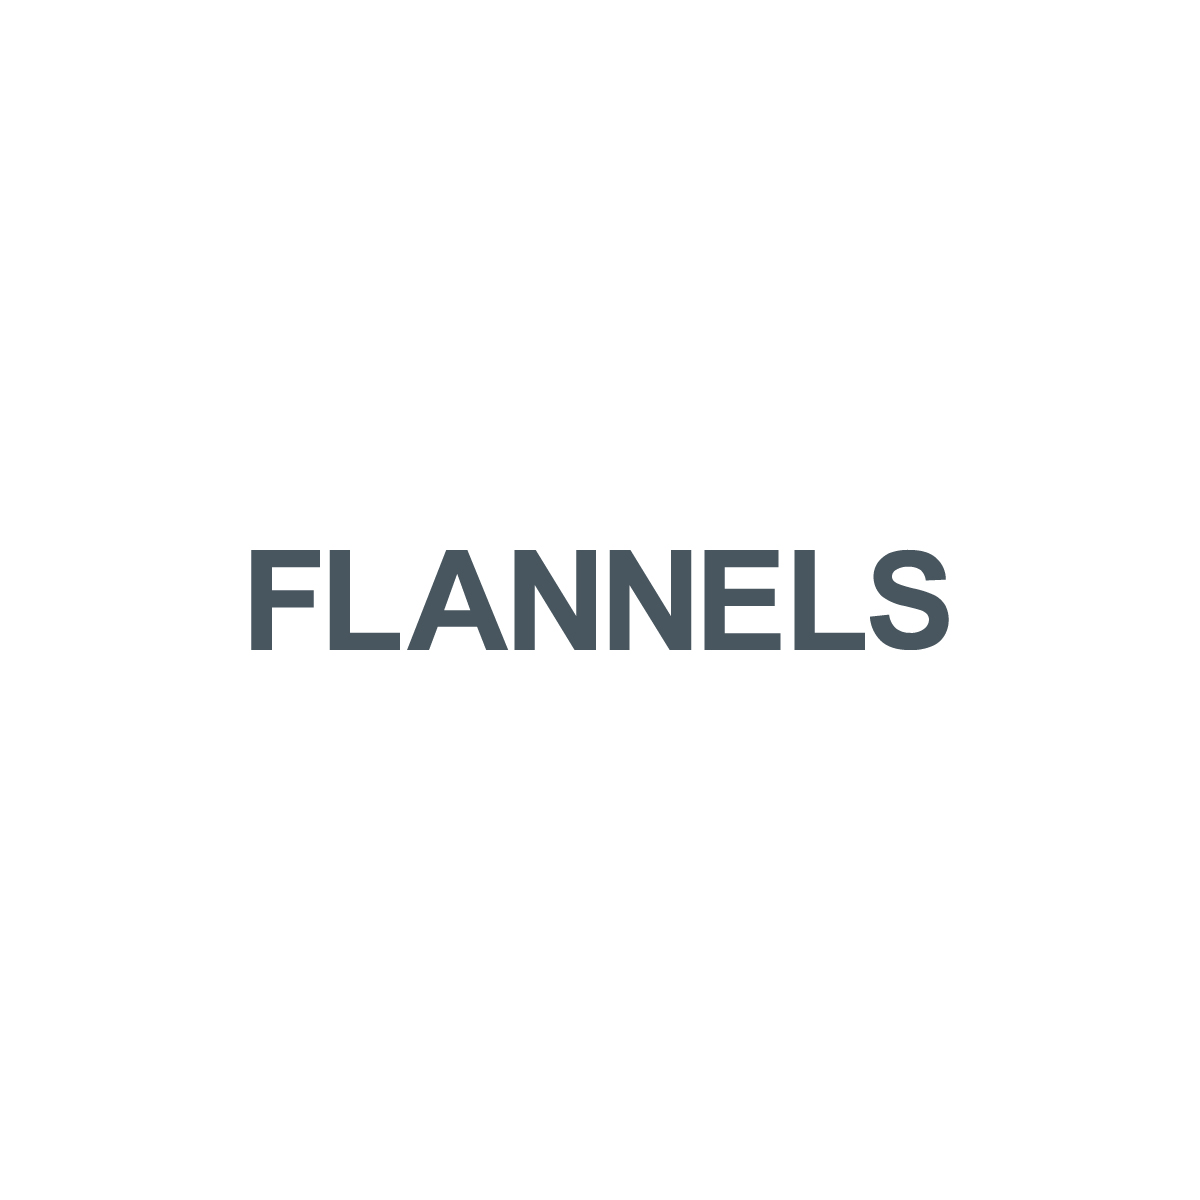 FLANNELS | SPLOOSH MEDIA | BRANDING AGENCY MANCHESTER